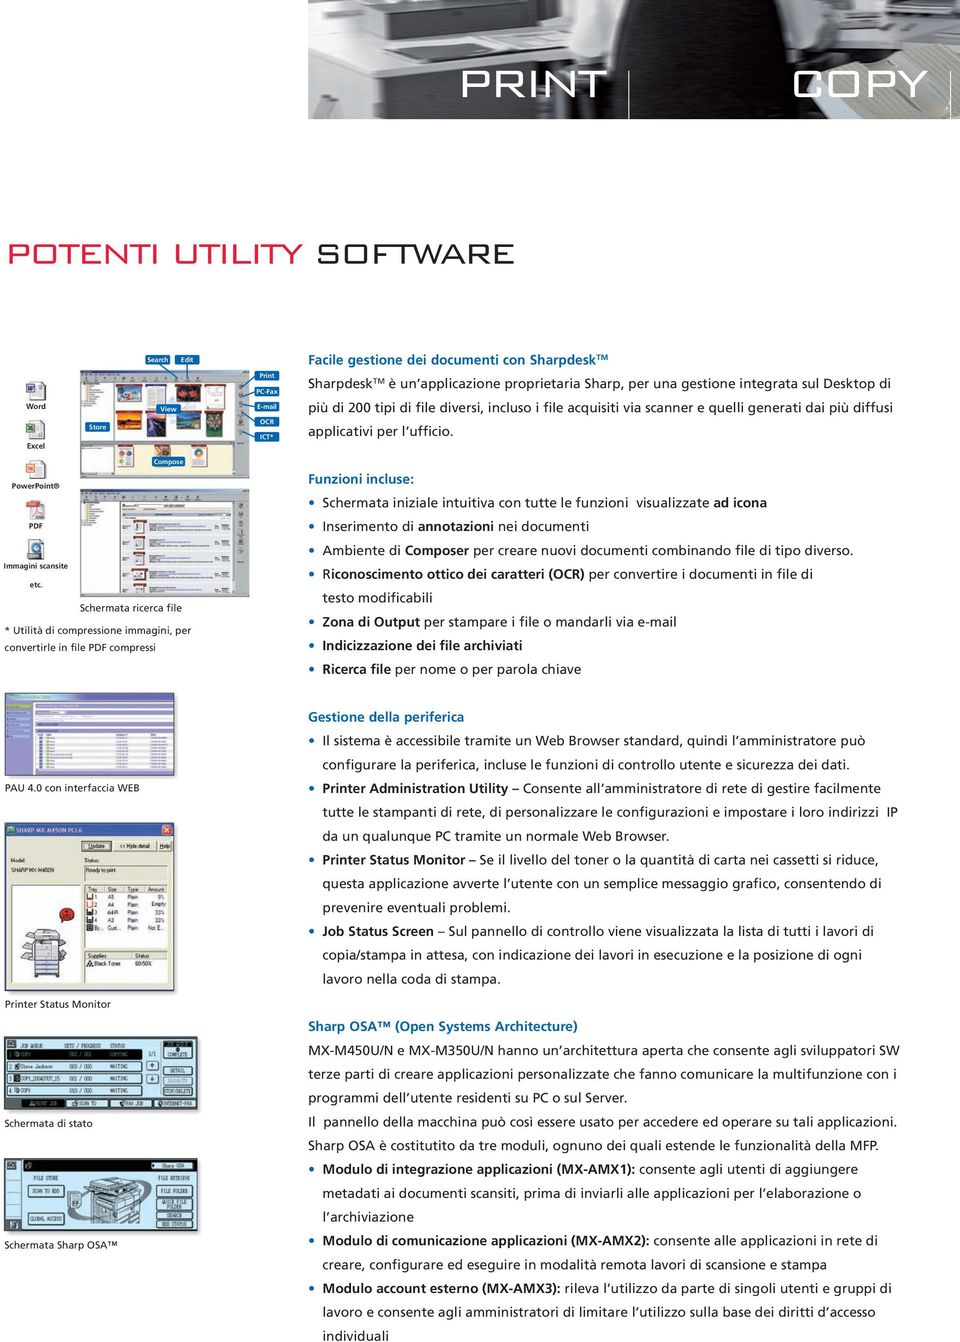 Compose PowerPoint PDF Immagini scansite etc.